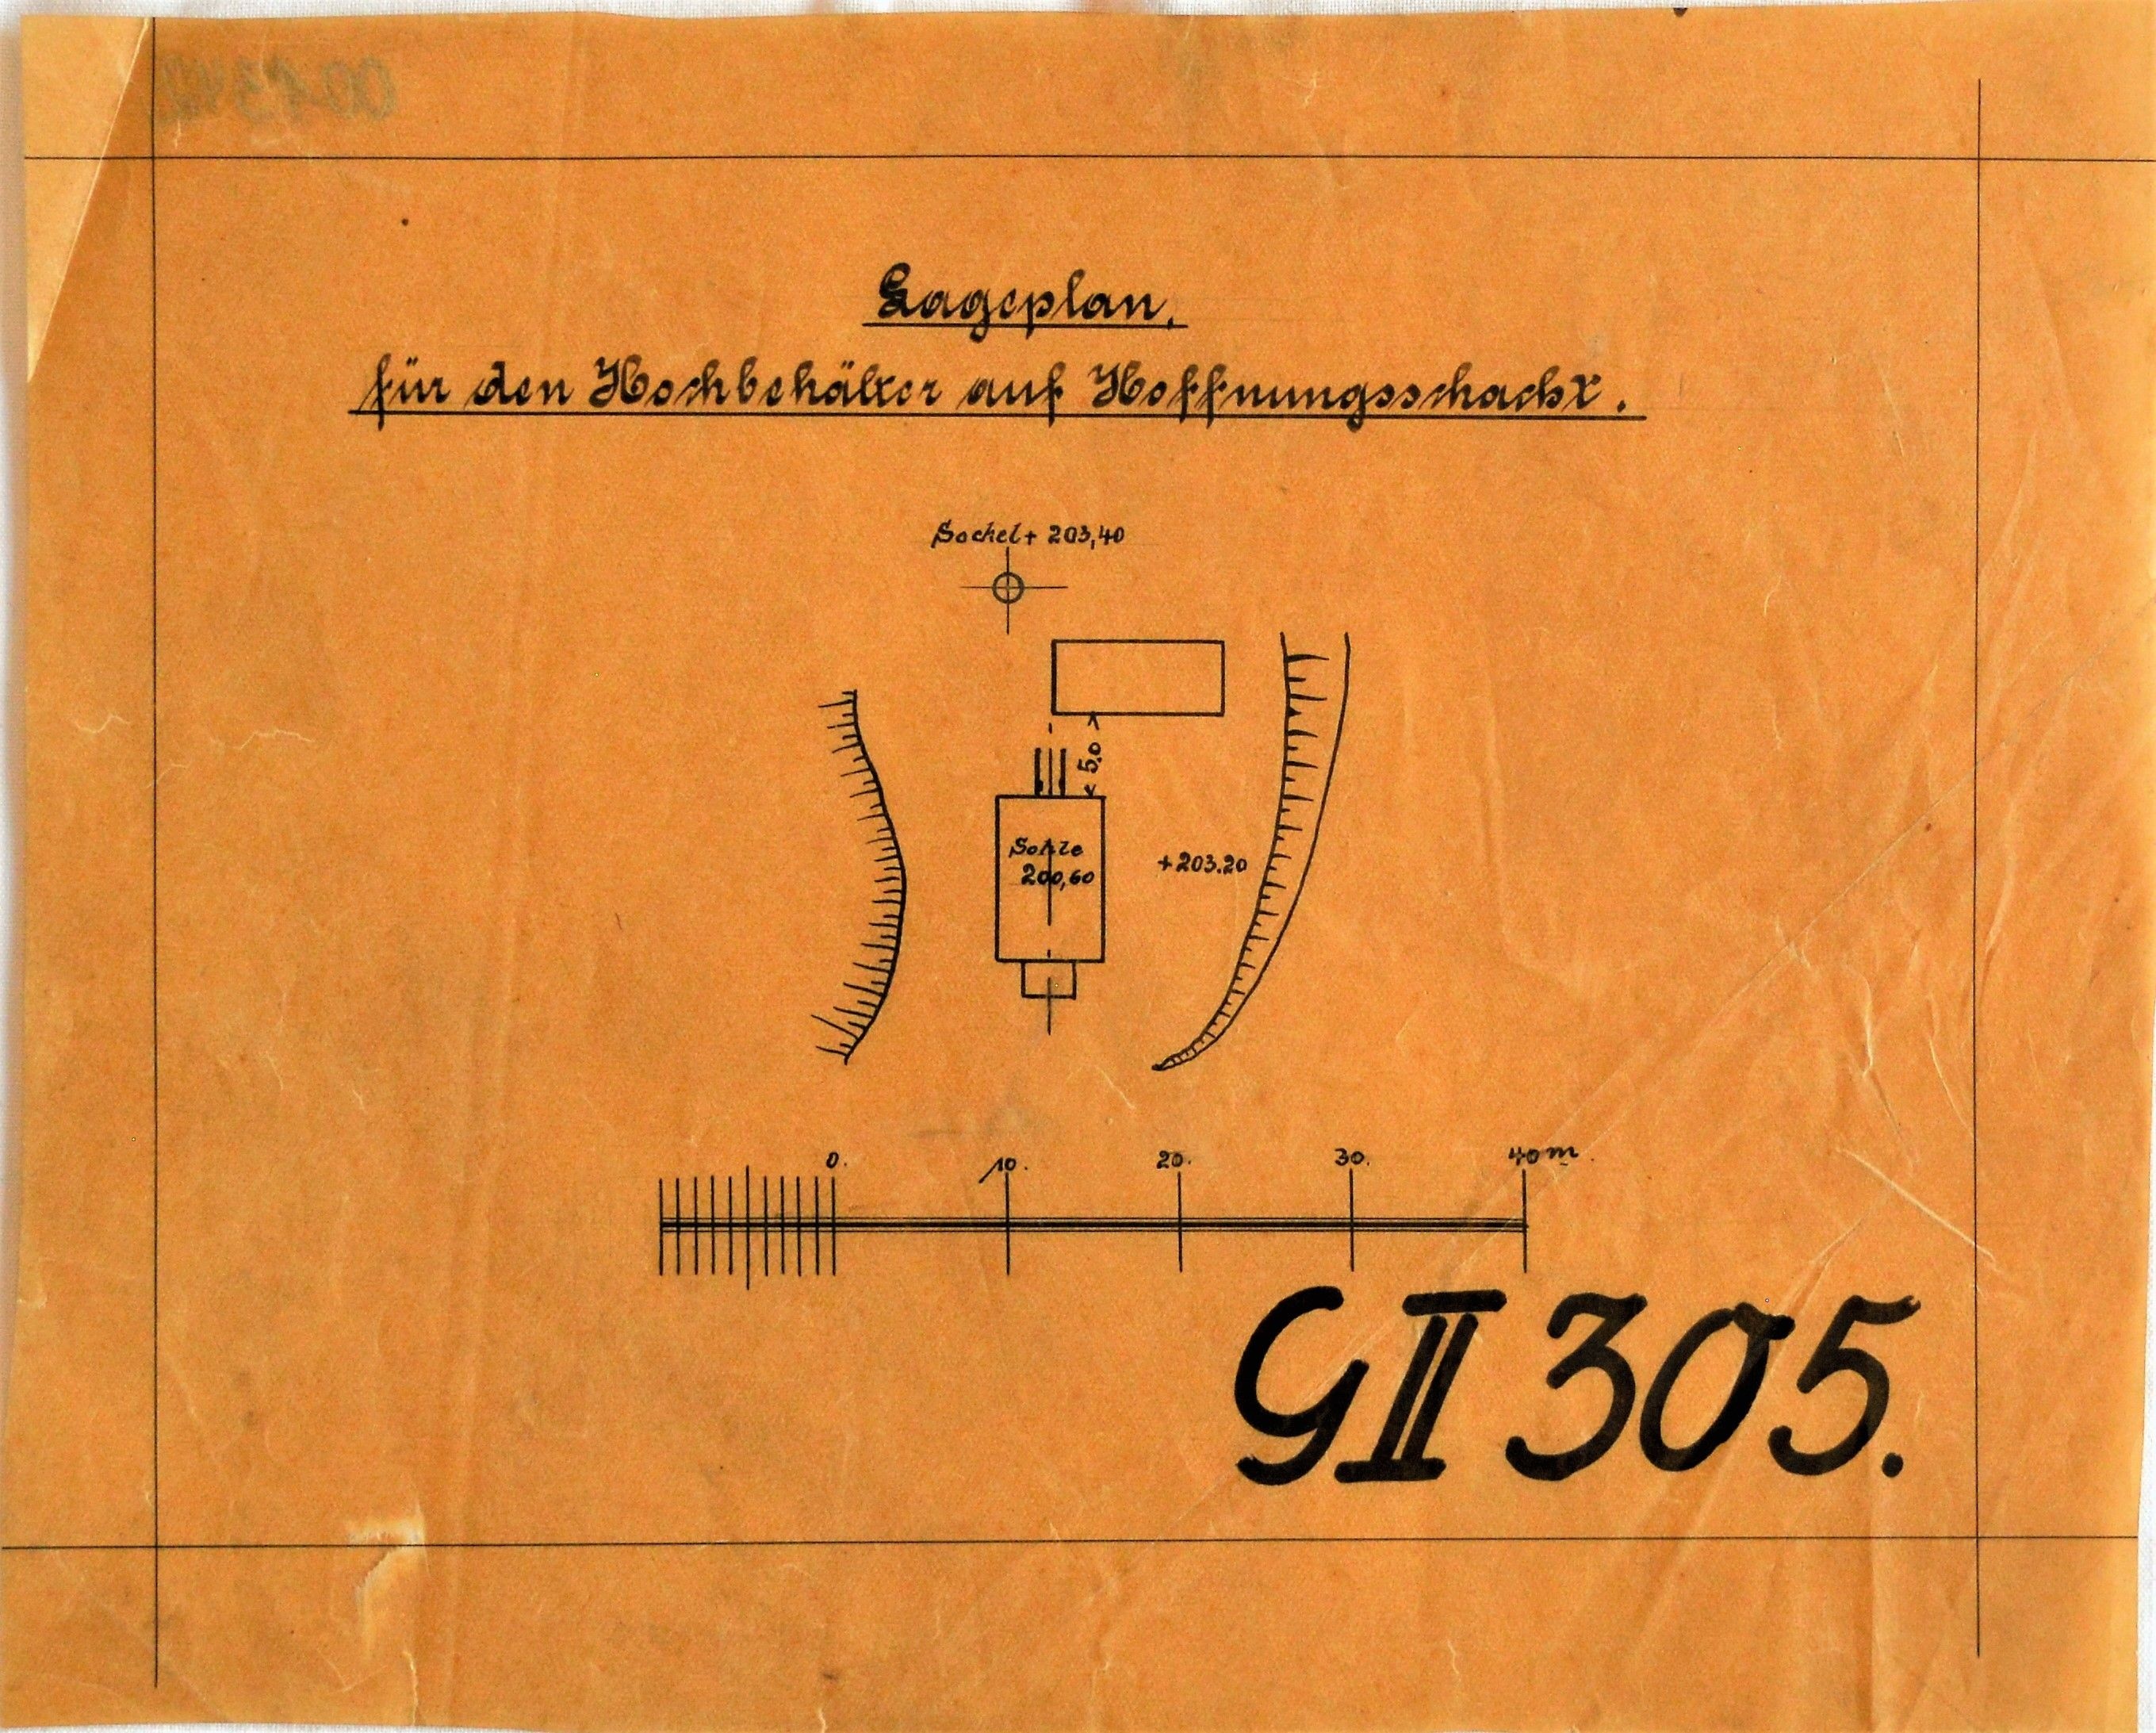 Lageplan für den Hochbehälter auf Hoffnungsschacht. (Mansfeld-Museum im Humboldt-Schloss CC BY-NC-SA)